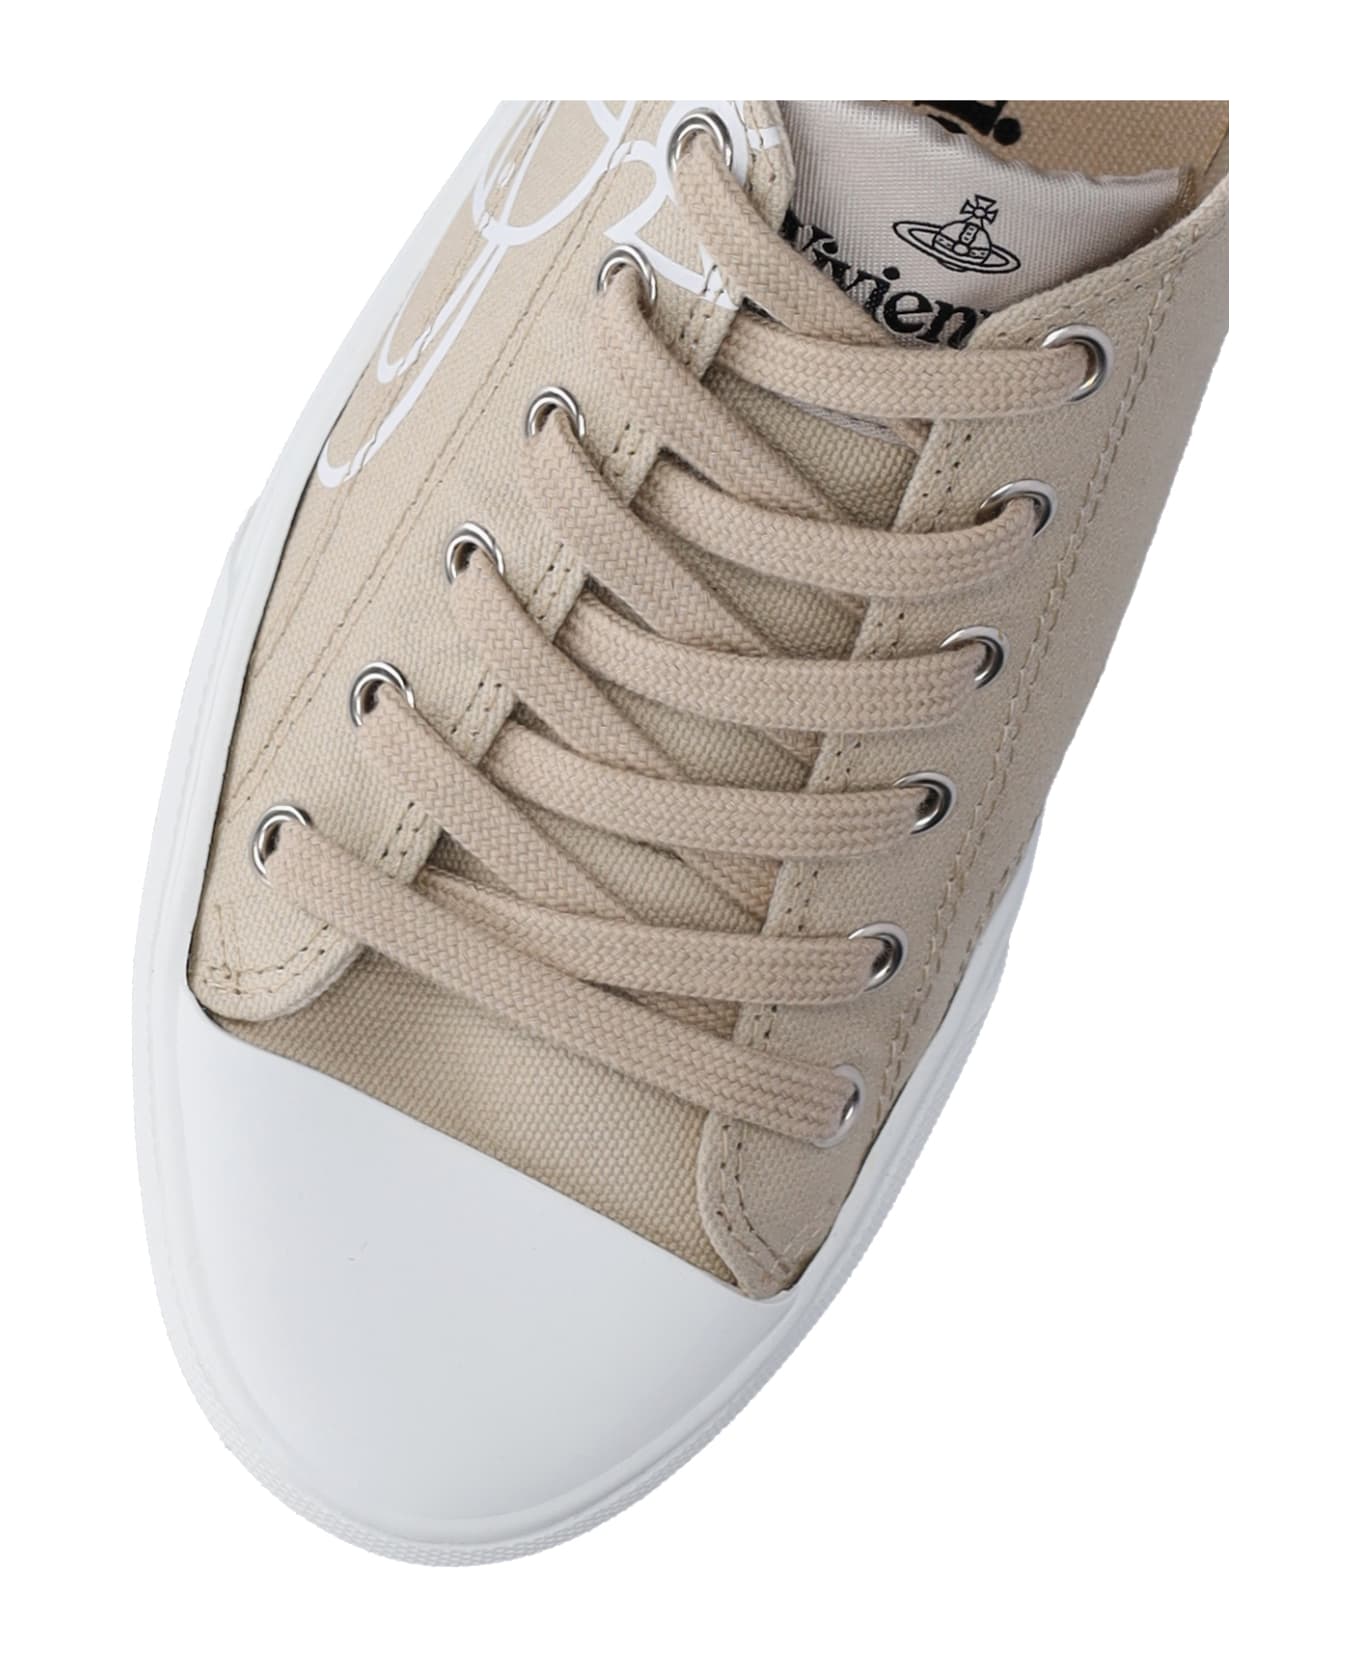 Vivienne Westwood 'plimsoll Low Top 2.0' Sneakers - Beige